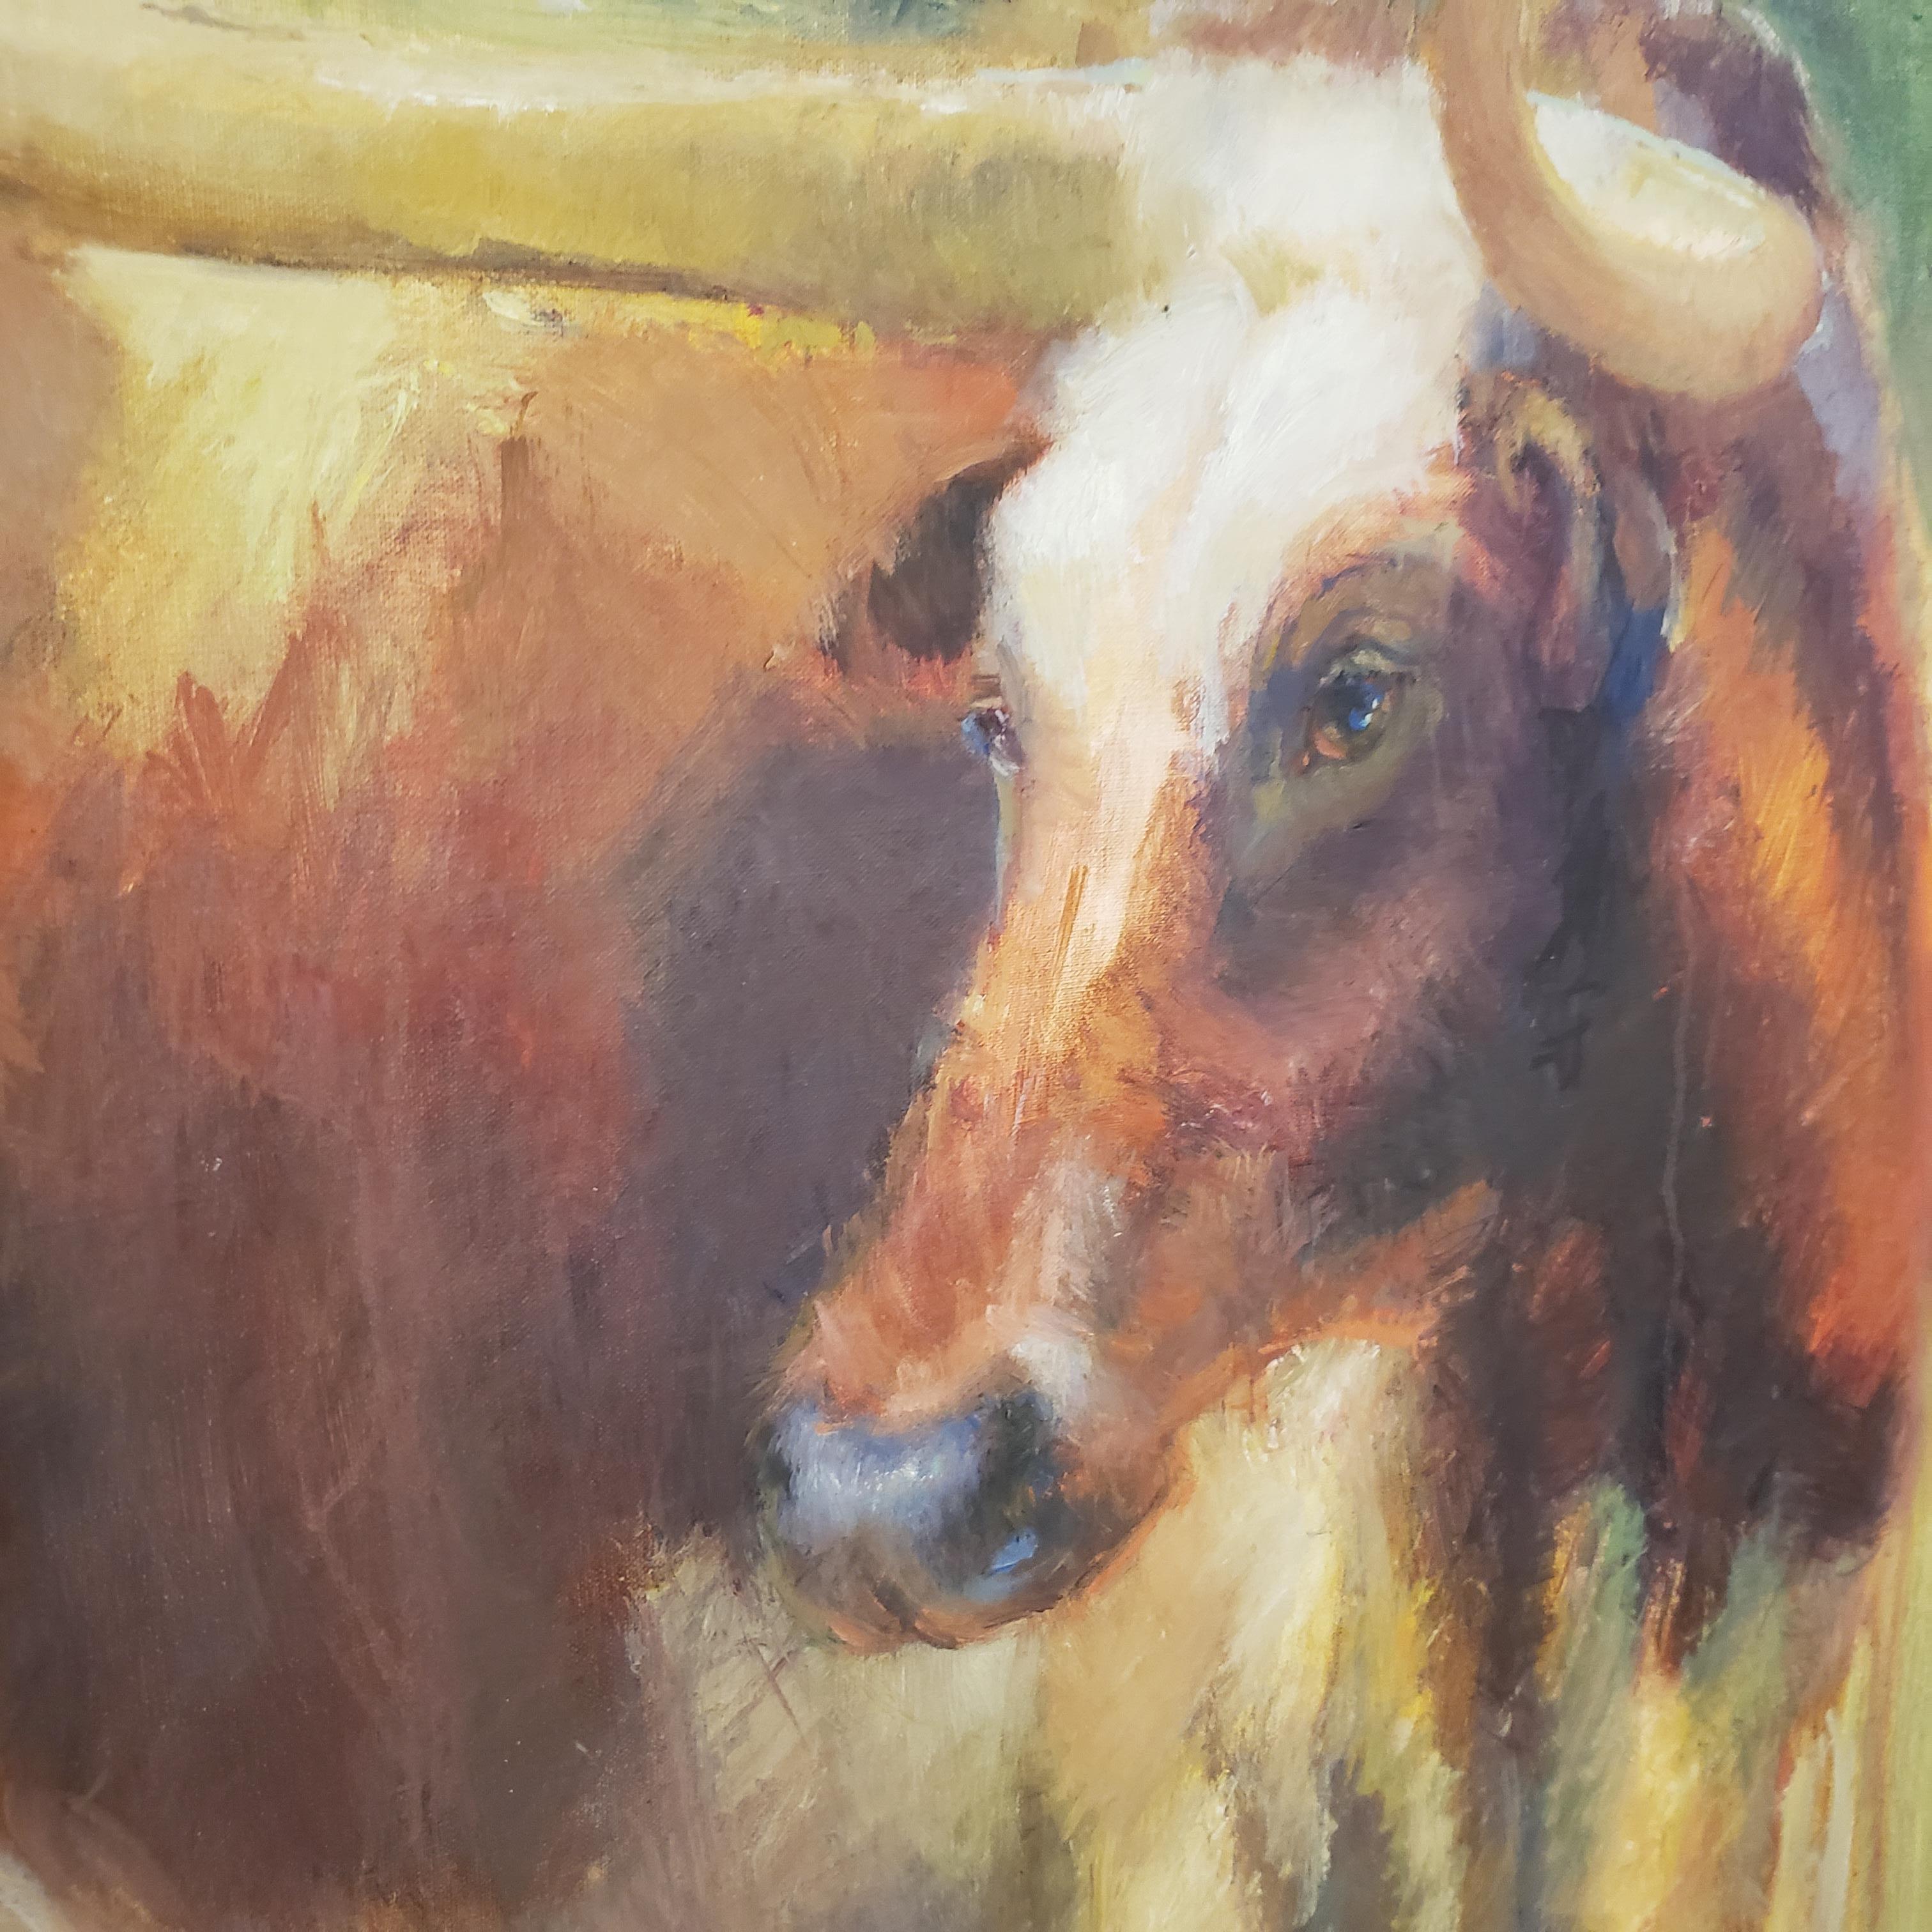 Gaze  montre le célèbre Longhorn du Texas  dans un ranch du Texas.  Il a un style impressionniste comme on le voit dans de nombreuses peintures de Virginia Vaughan au Texas. Elle est connue pour ses peintures d'animaux, de missions texanes et de la